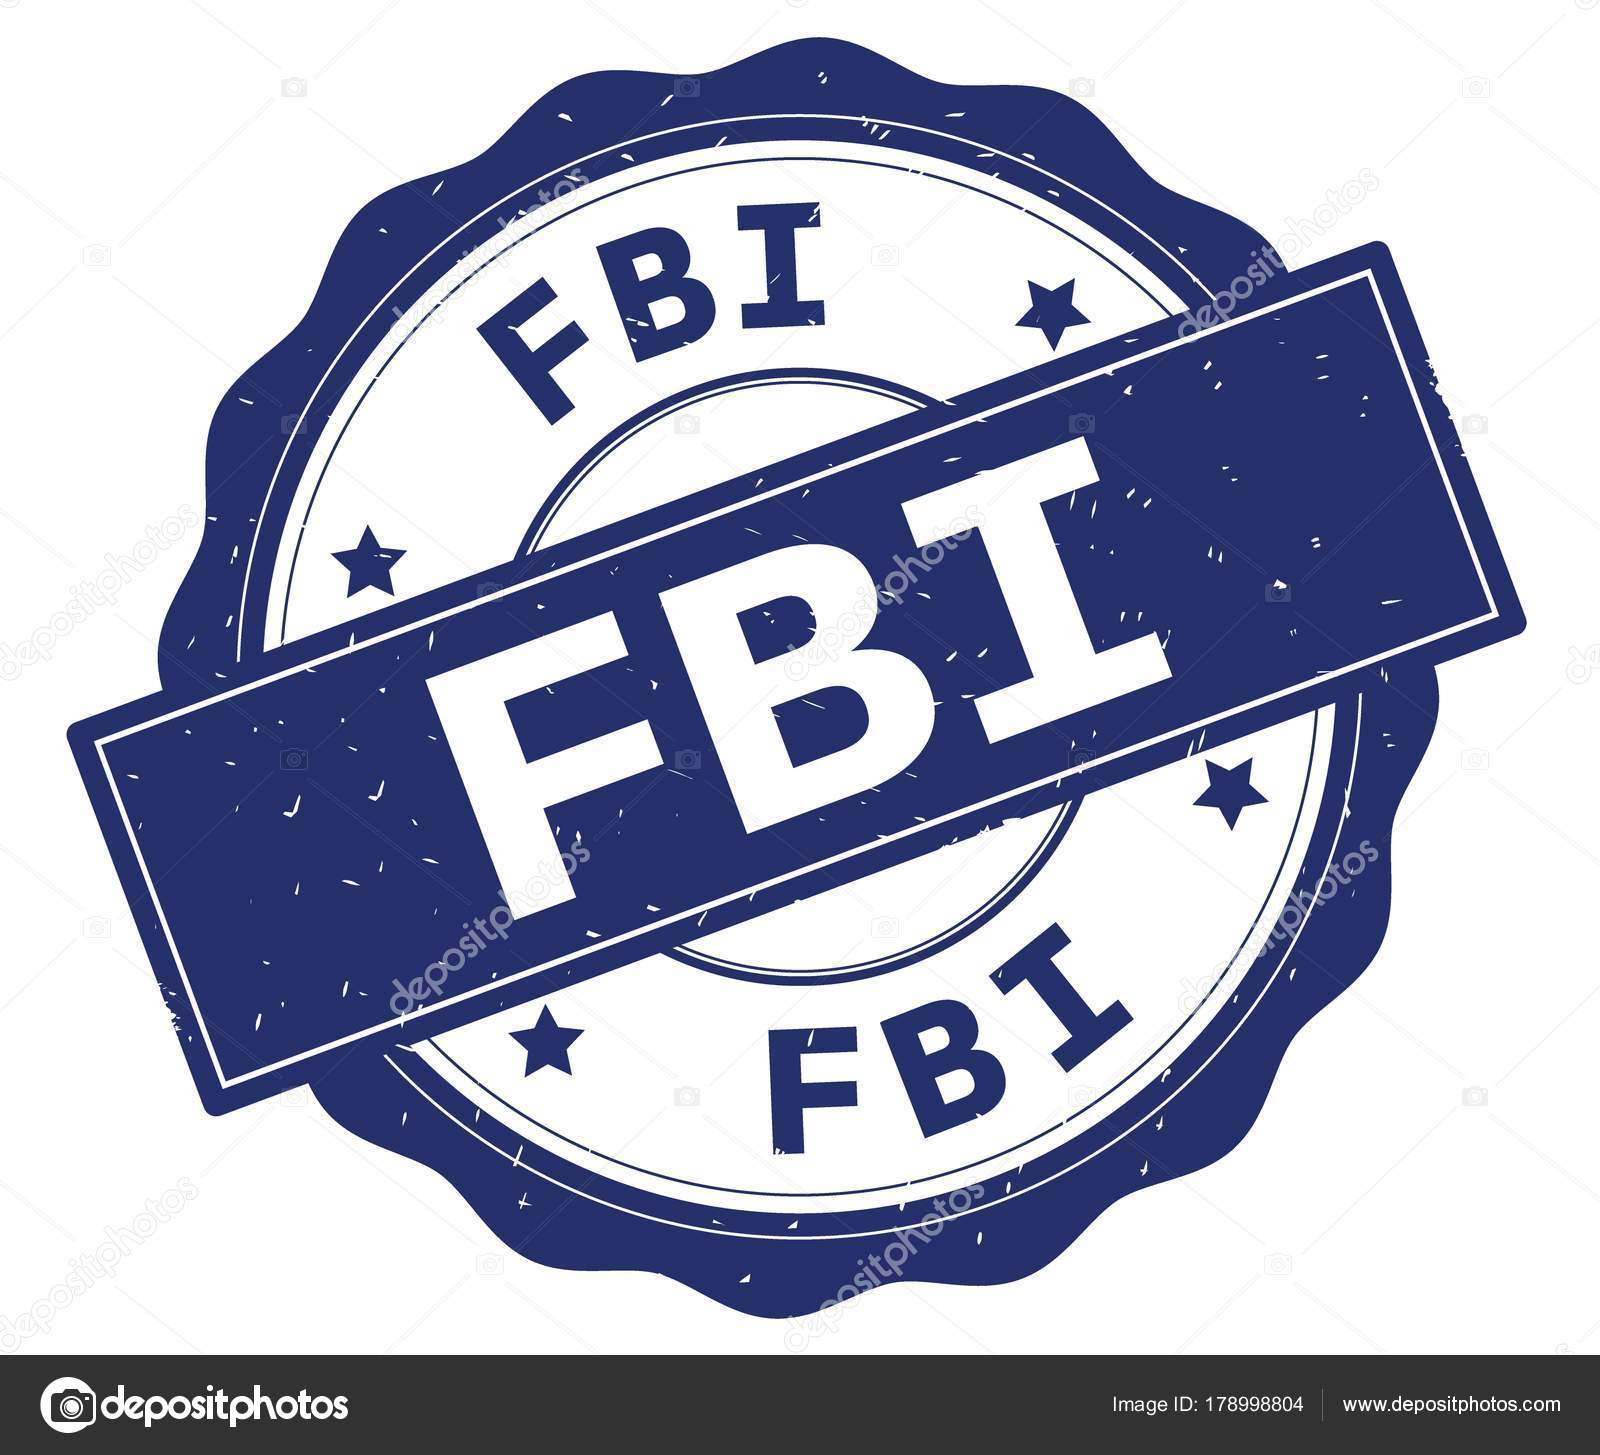 FBI text, napsaný na modré kolo odznaku. 